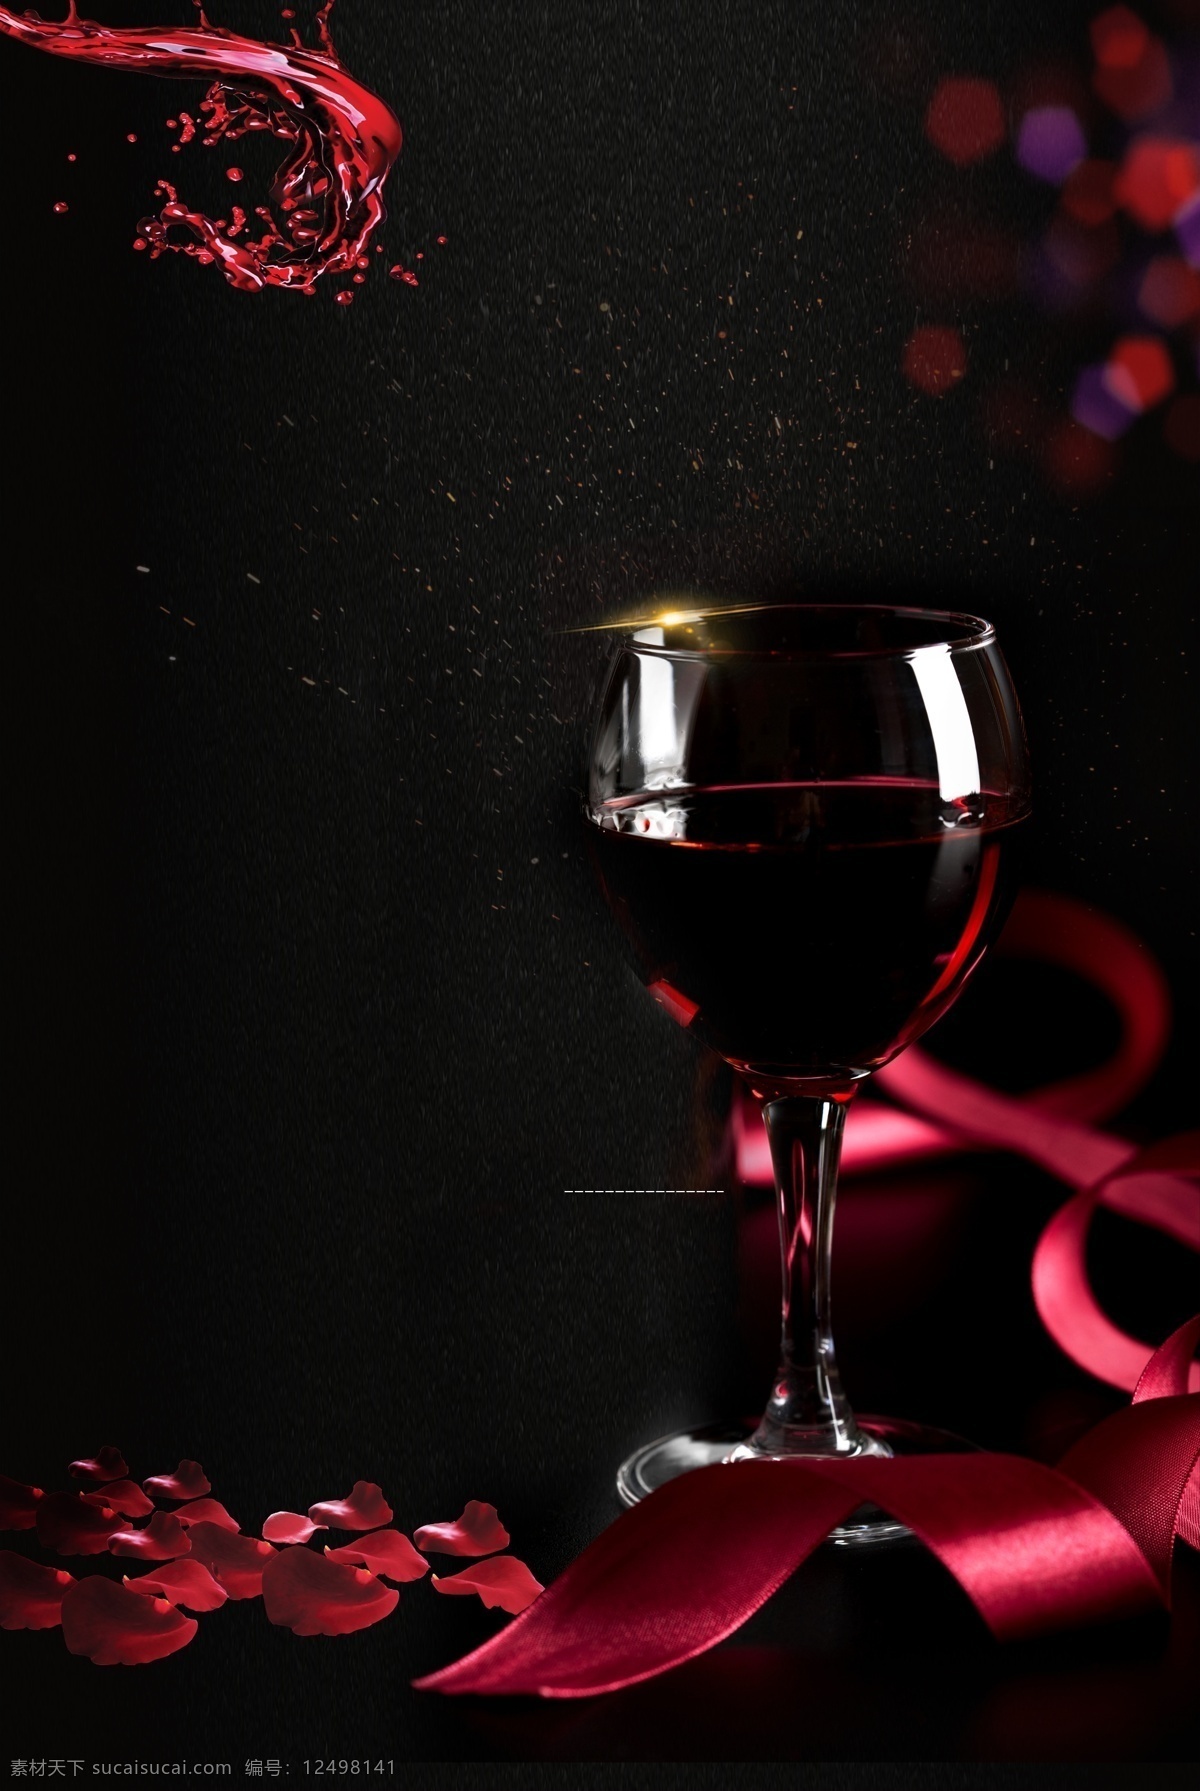 大气 高档 红酒 背景 海报 葡萄酒 商业宣传背景 海报背景 黑色背景 深红色 质感 纹理